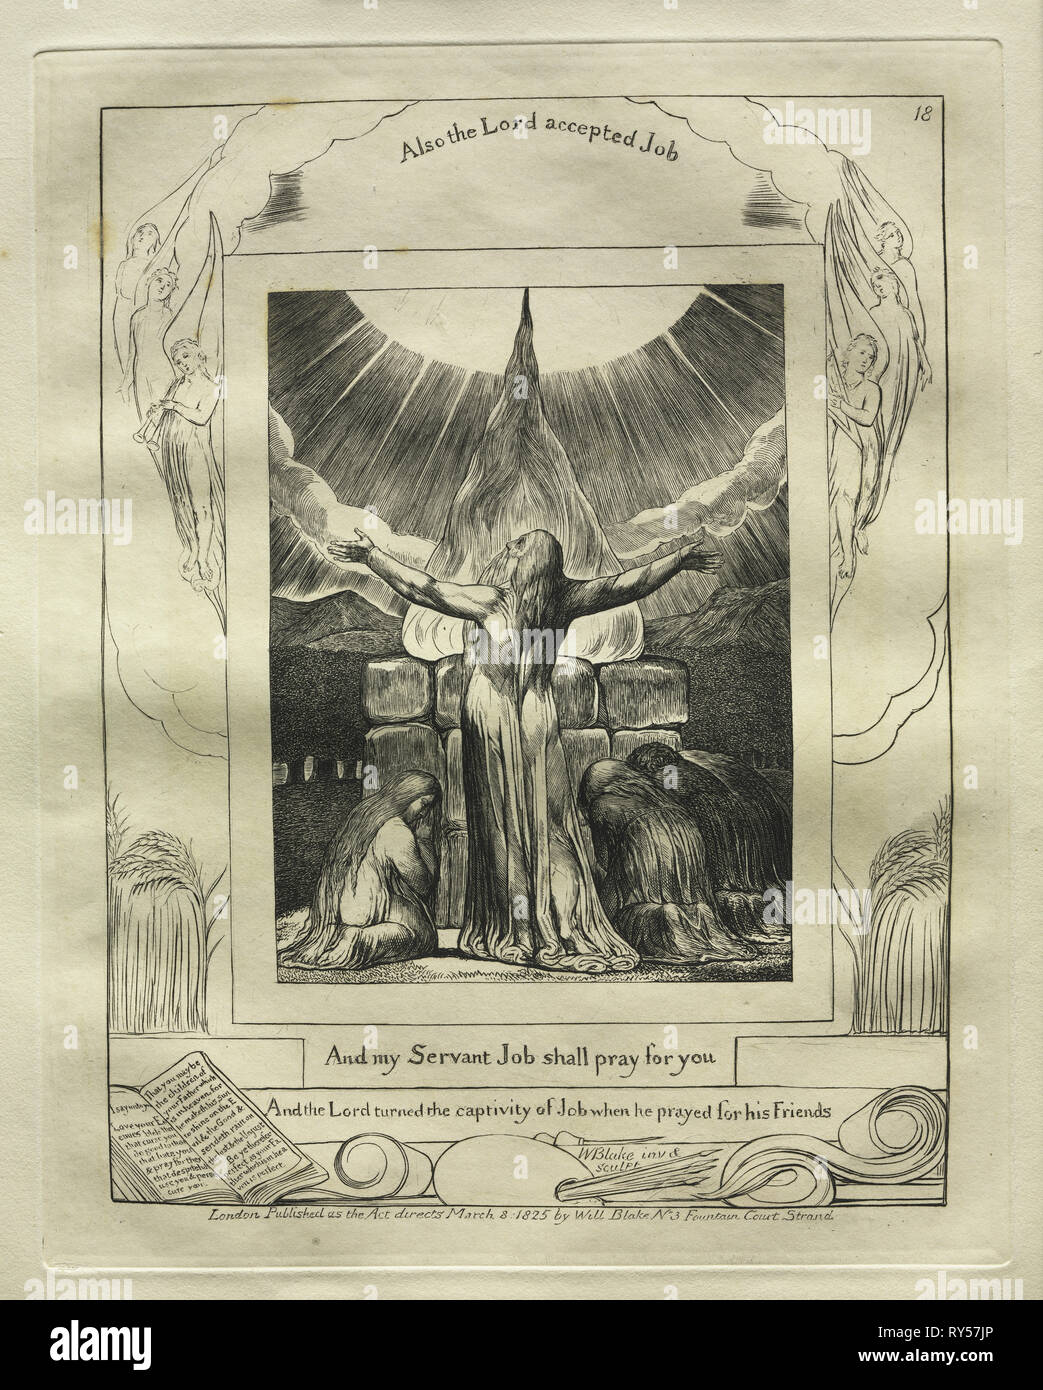 Le Livre de Job : Pl. 18, et mon serviteur Job doit prier pour vous, 1825. William Blake (1757-1827), britannique. Gravure Banque D'Images